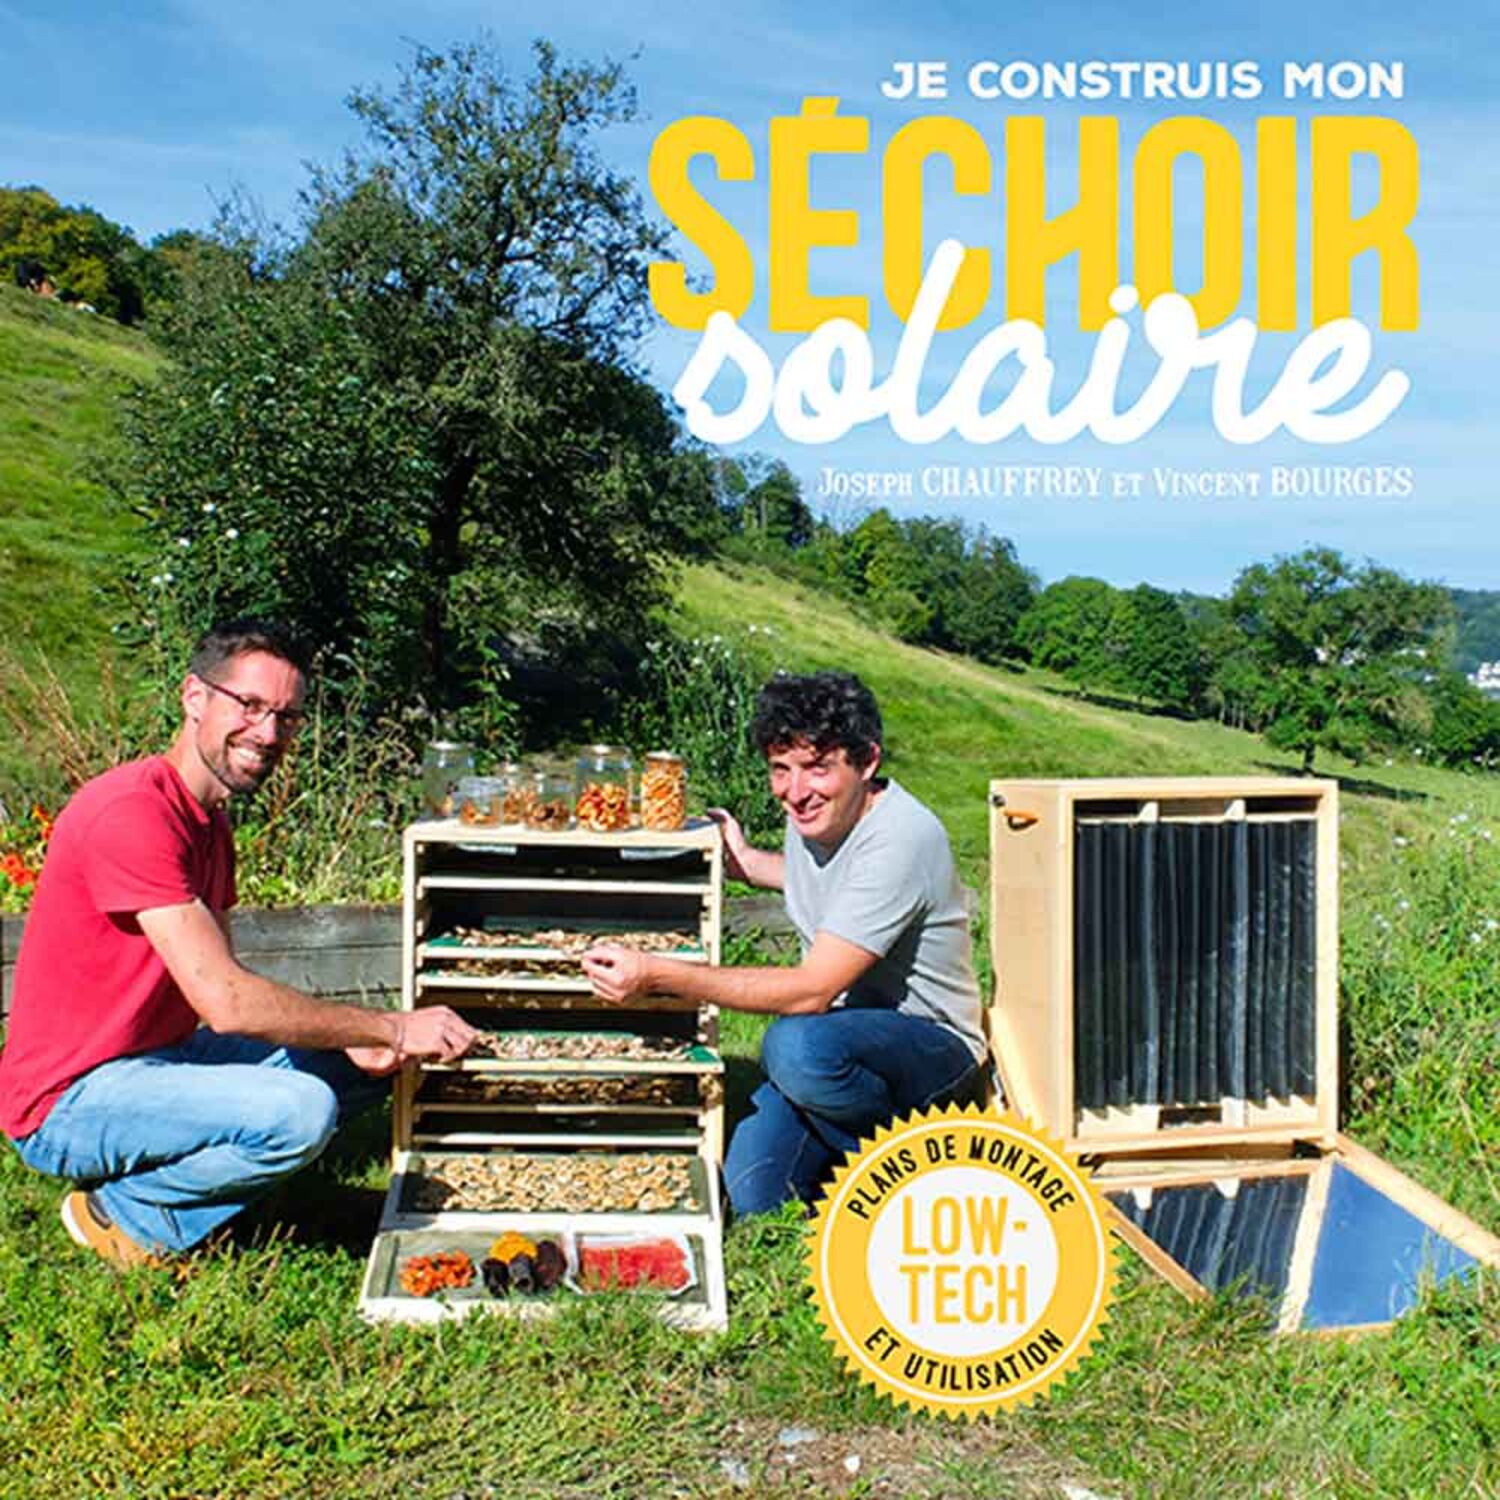 Joseph Chauffrey : Je construis mon séchoir solaire, le livre